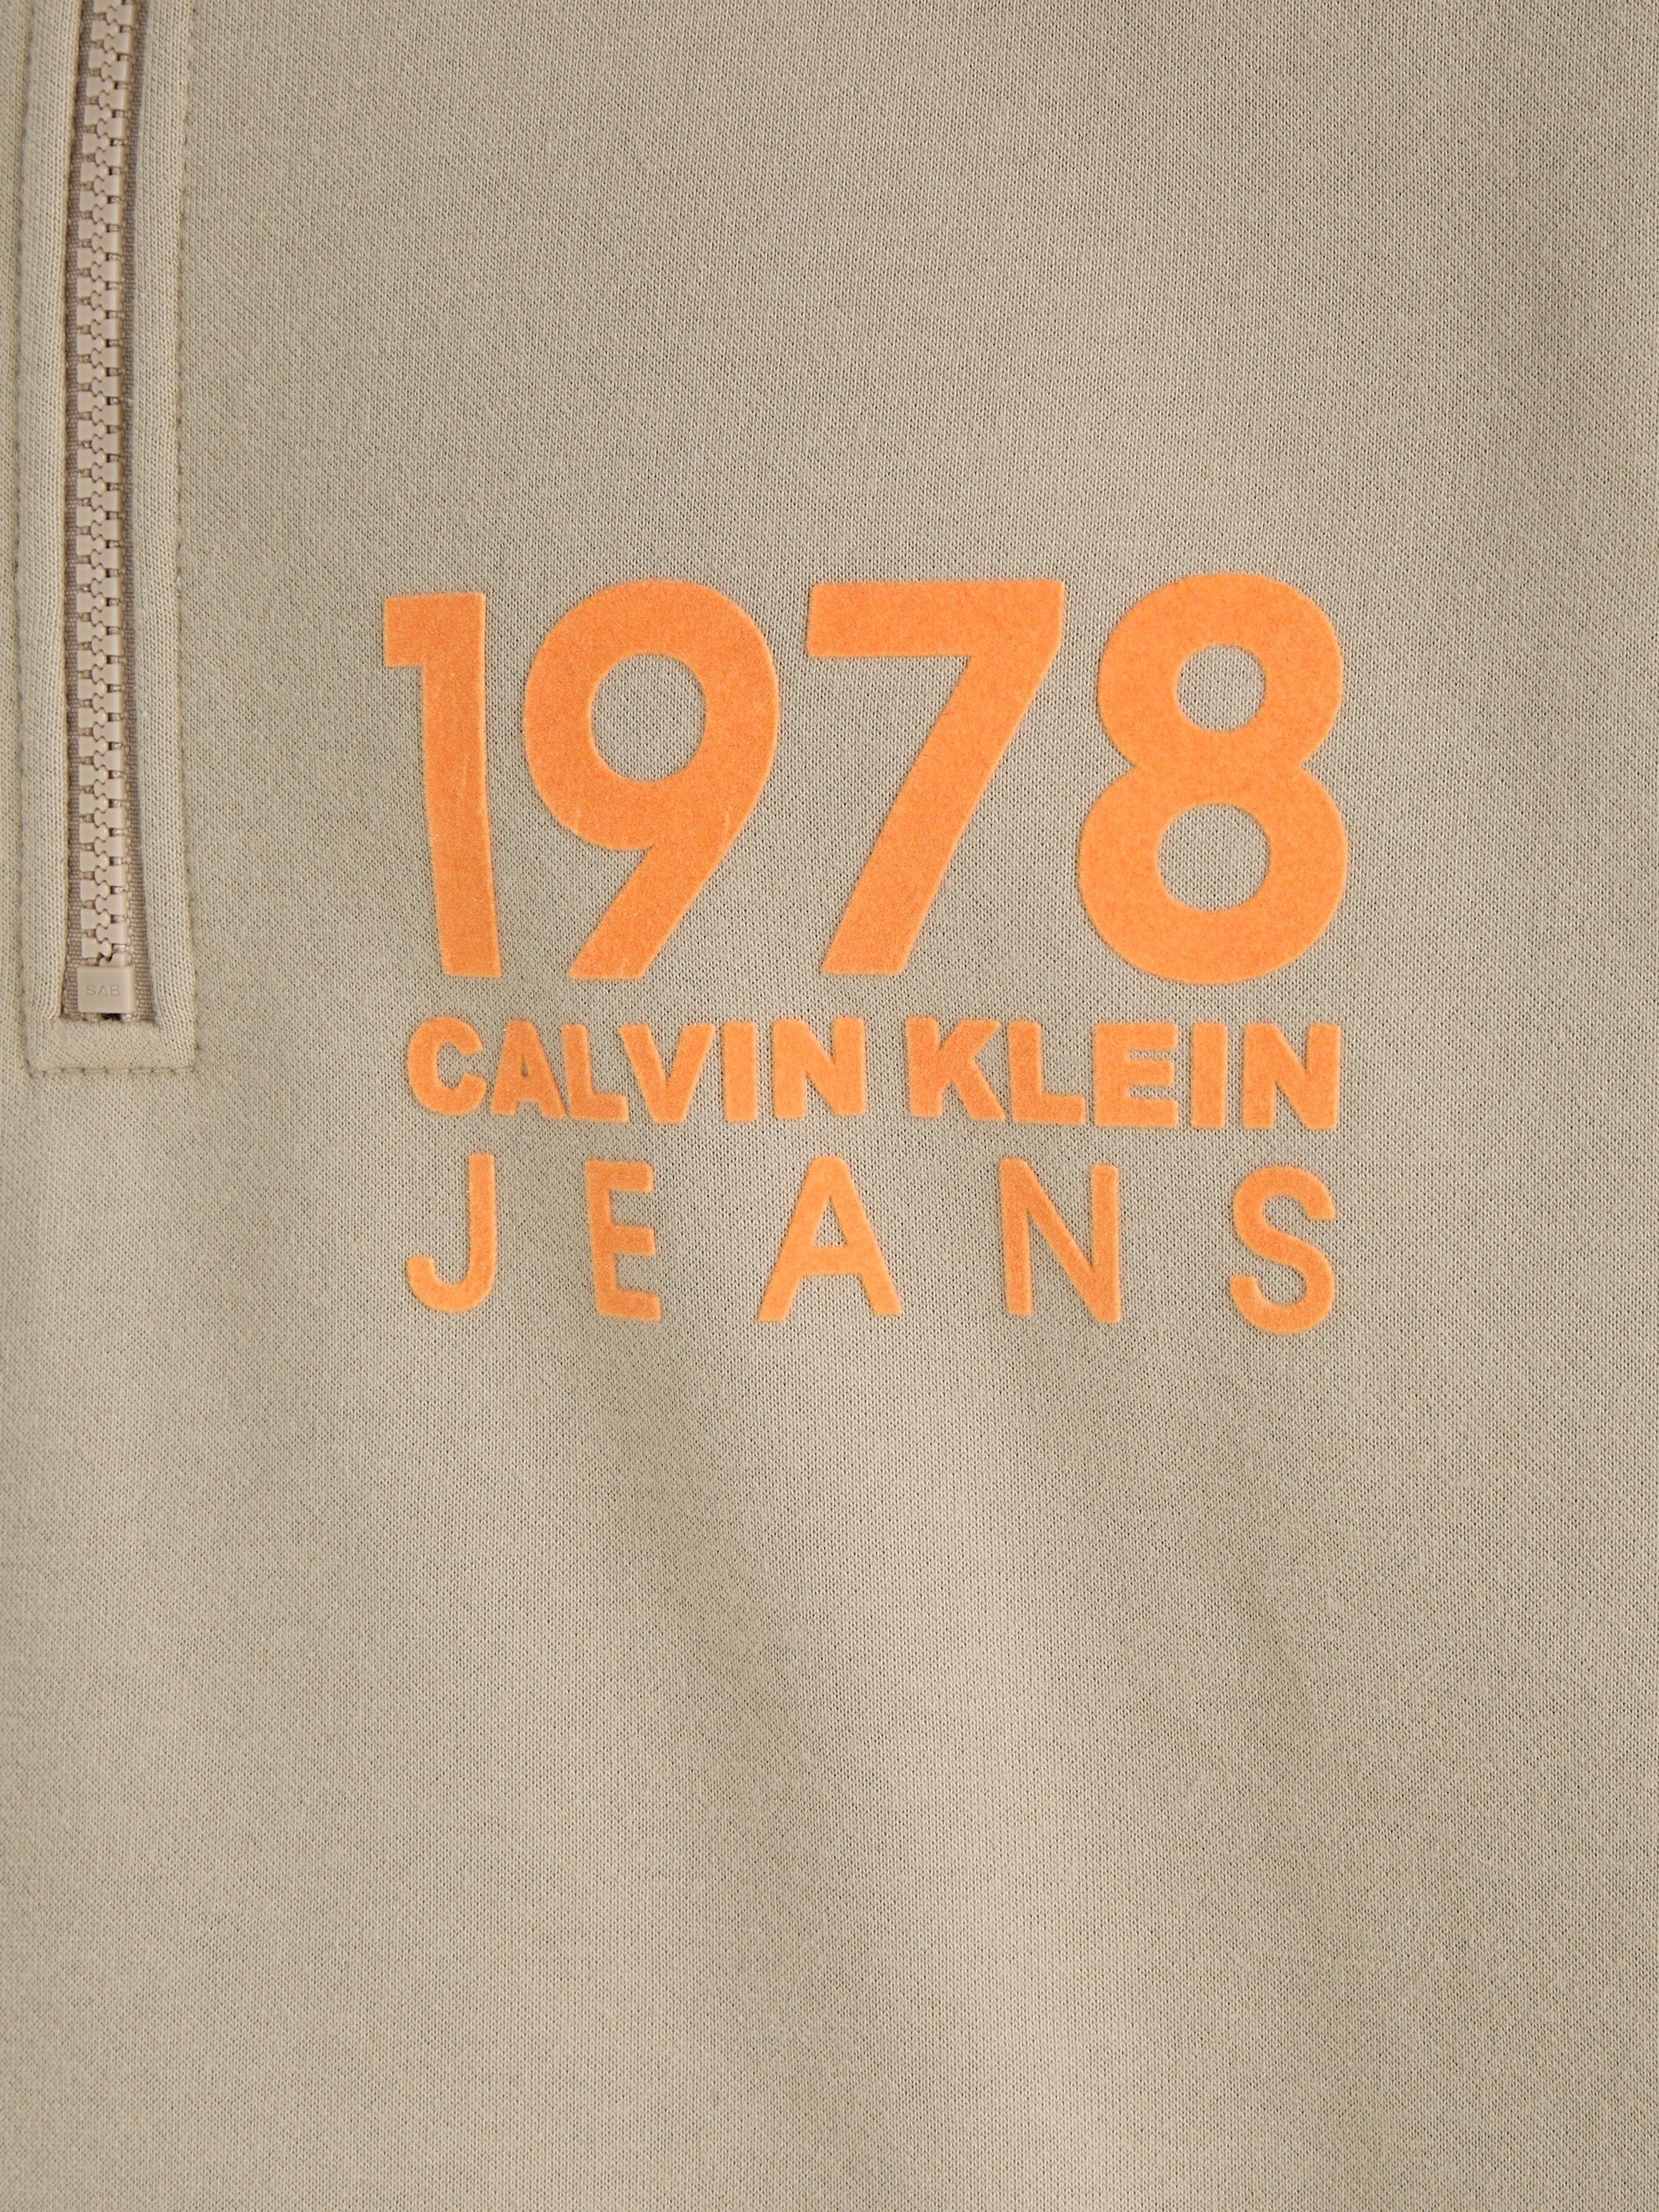 HALF LOGO Klein Calvin ZIP 1978 Sweatshirt FLOCK Jeans